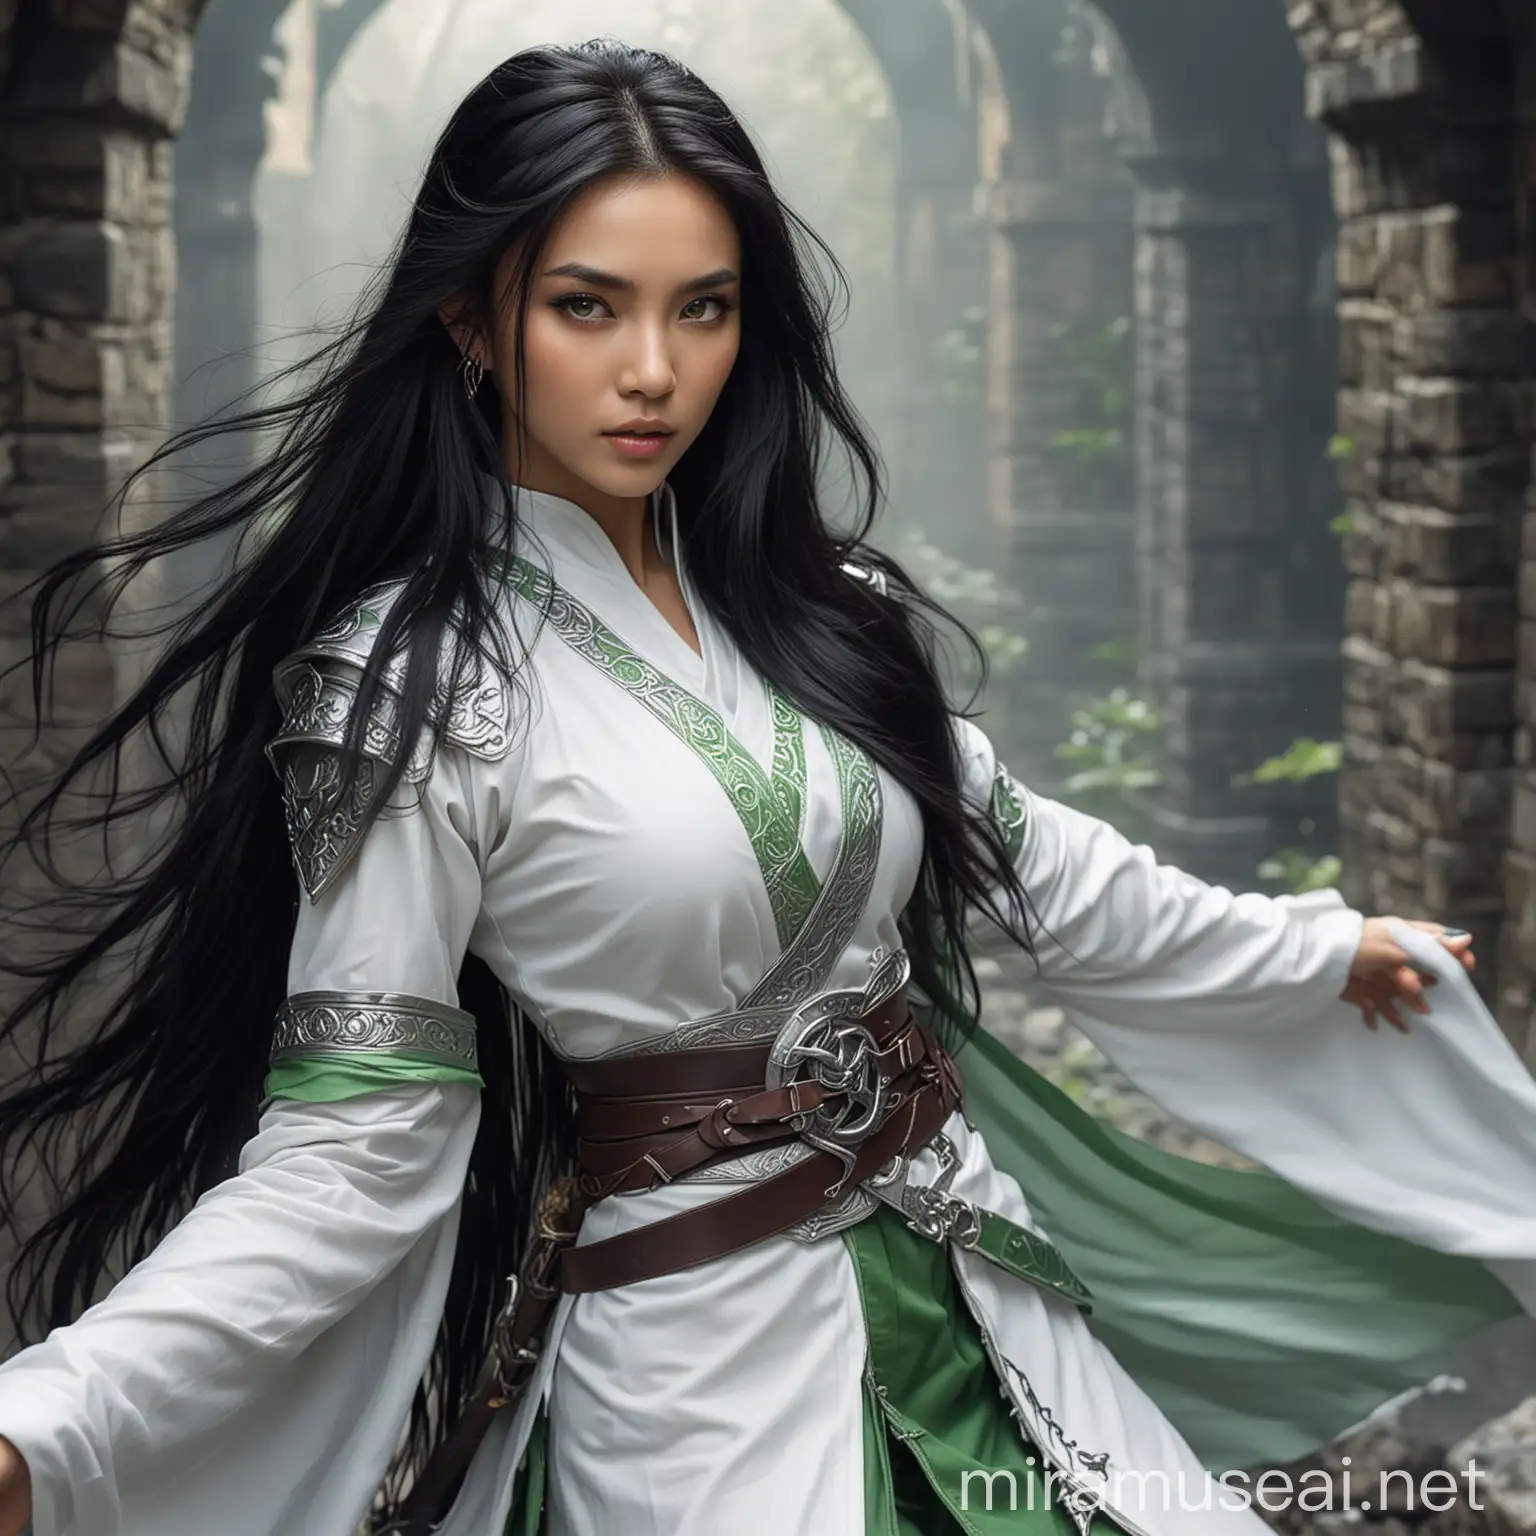 Sehr Schöne Frau, asiatische, lange schwarze Haare, grüne Augen, zierlich, weiße Kampfkleidung, dungeons and dragons Stil, fantasie 